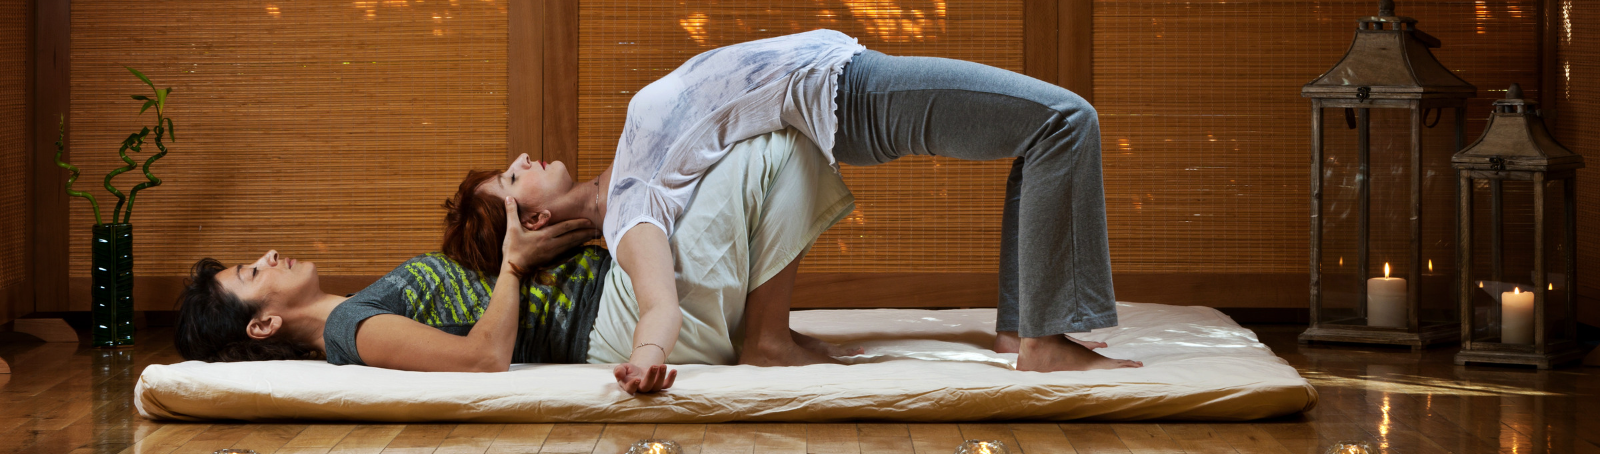 Thai Massage et Meditation: Combinations de Pratiques pour une Expérience Profonde